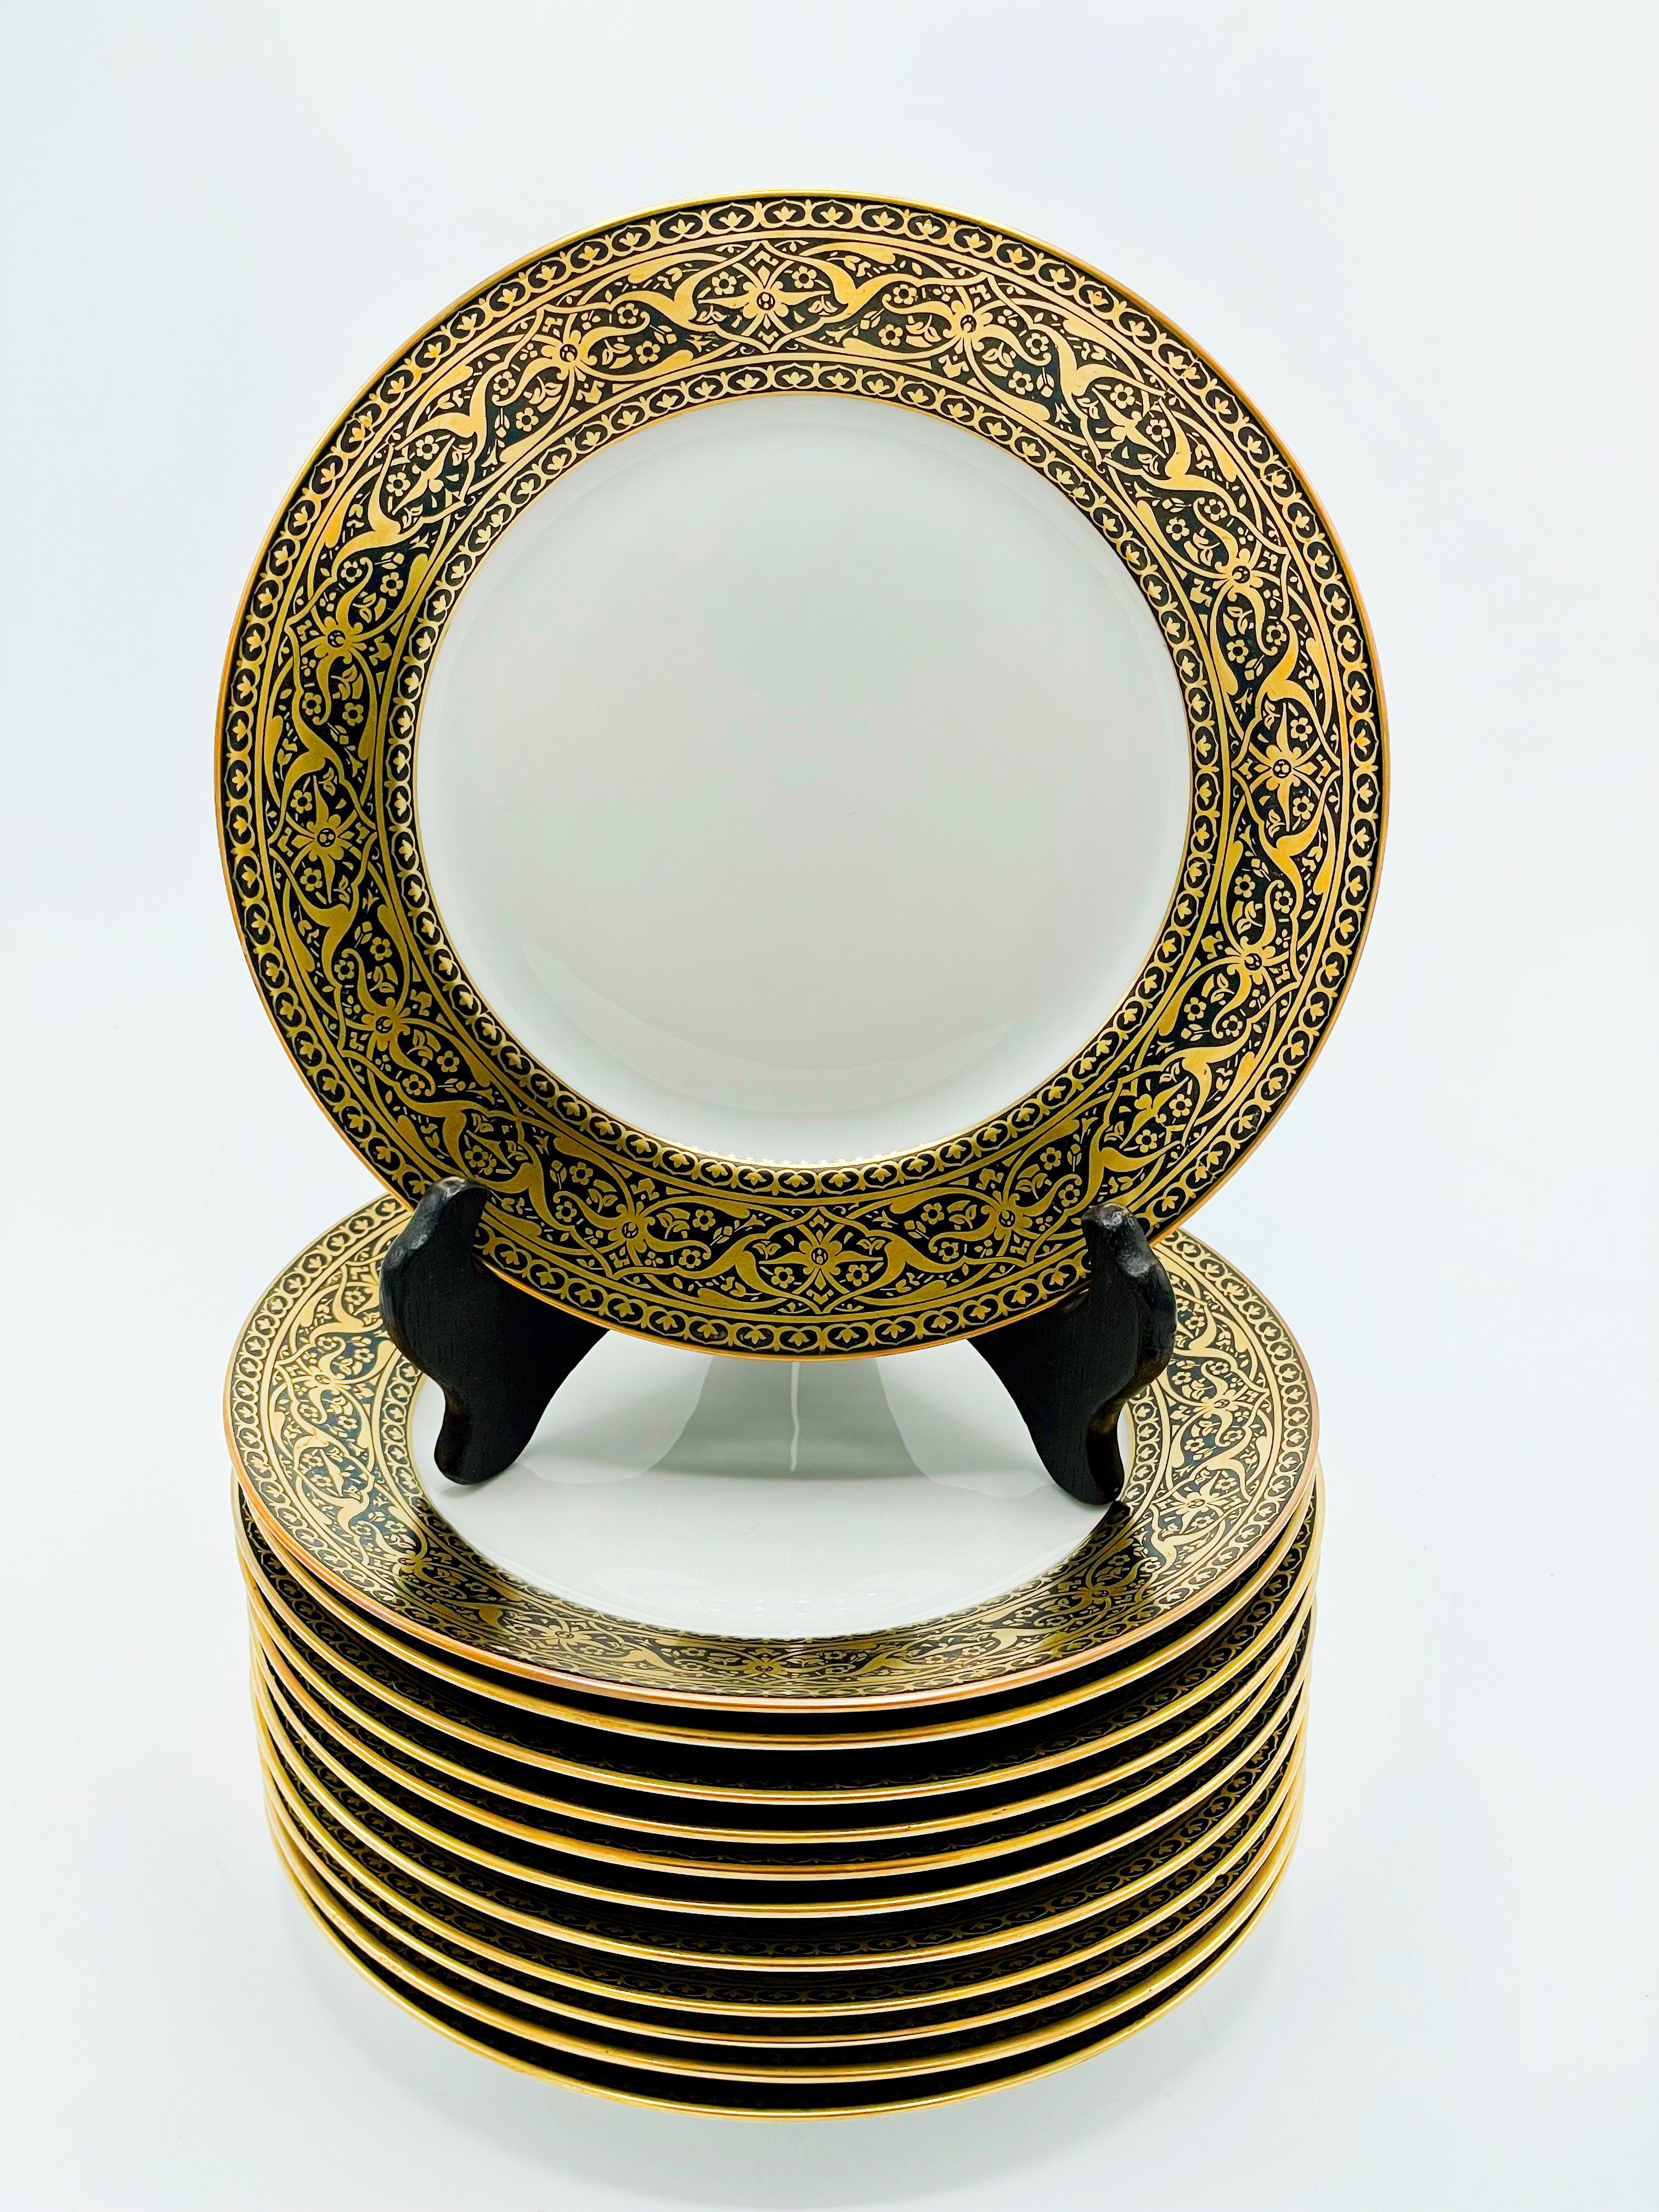 Un ensemble de douze assiettes à dessert françaises en noir et or avec des bordures élaborées. 
La porcelaine blanche avec une bordure exotique de style persan est marquée Limoges France Superieur. Taille : 18,5 centimètres de diamètre.